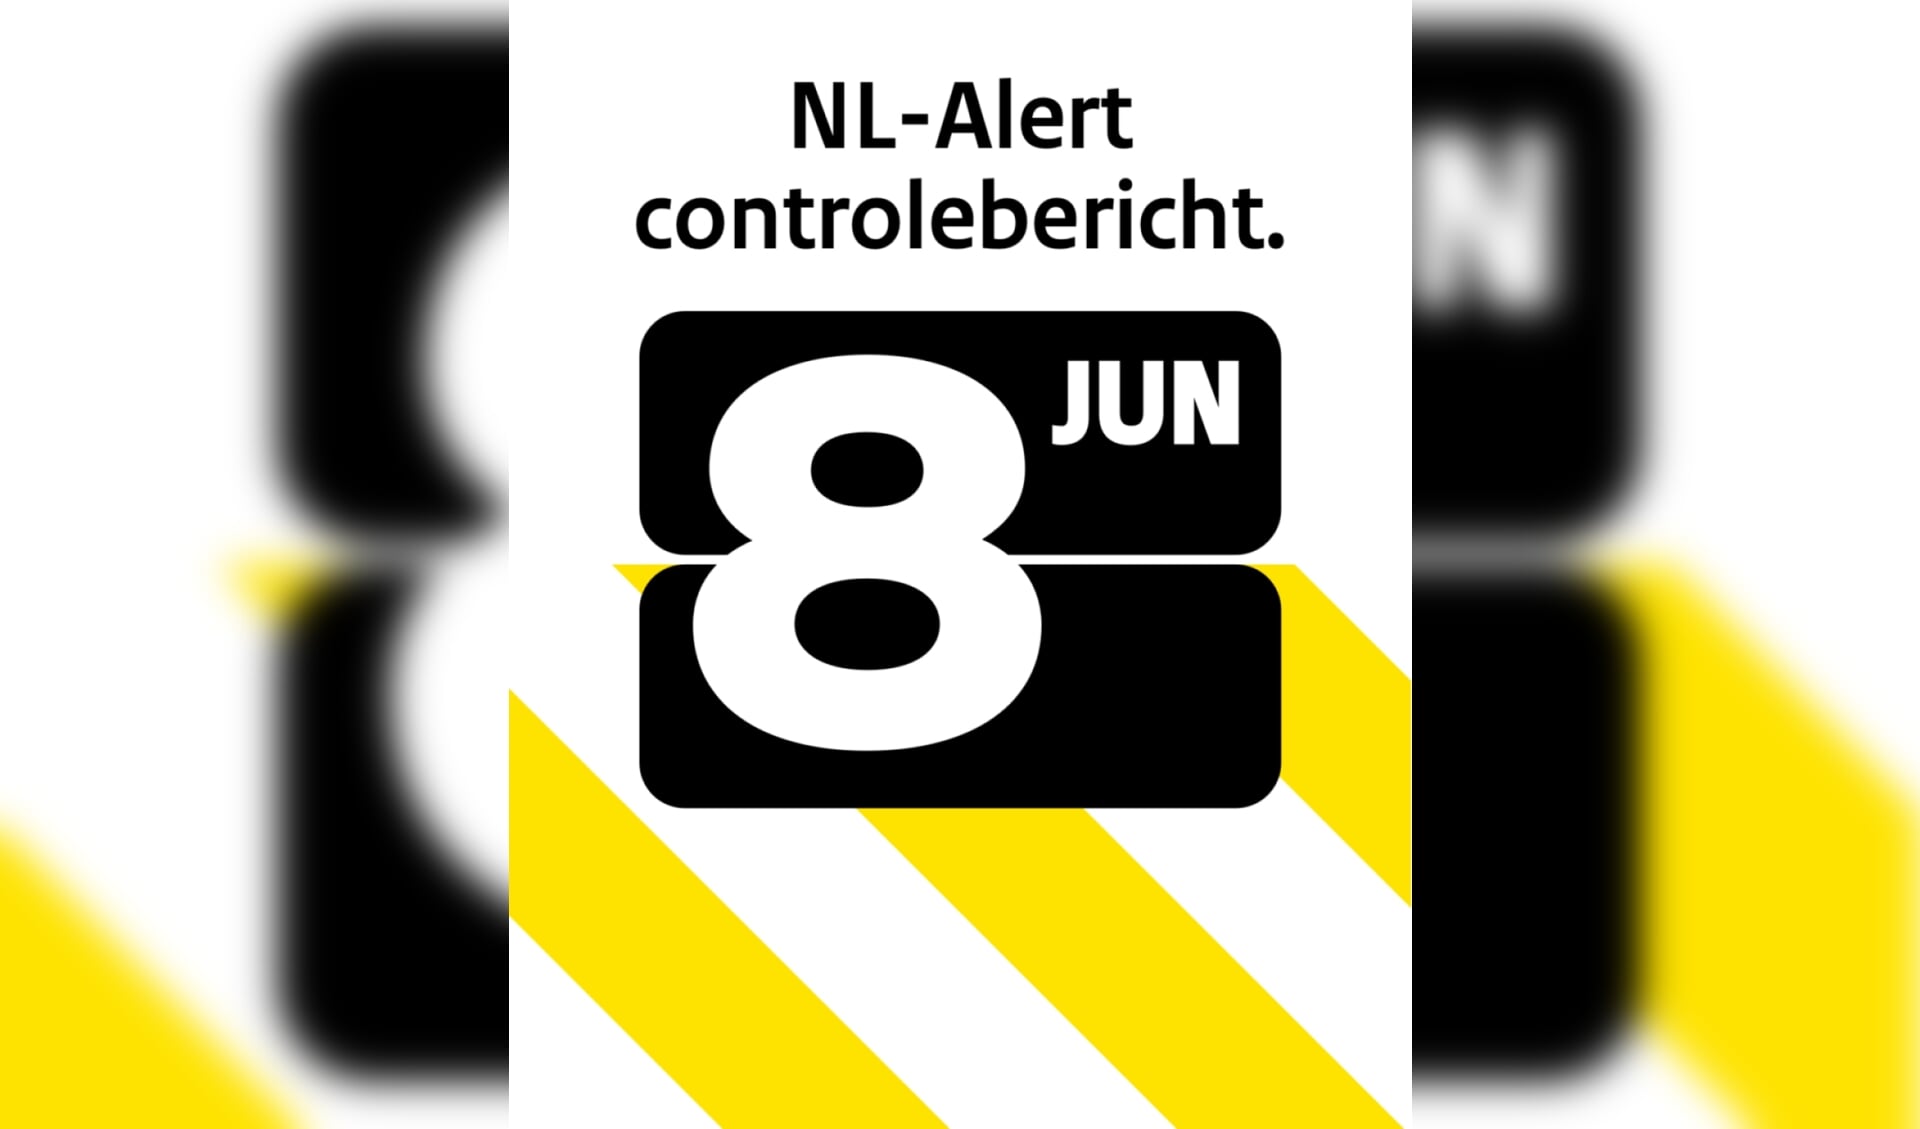 NL-Alert controlebericht 8 juni